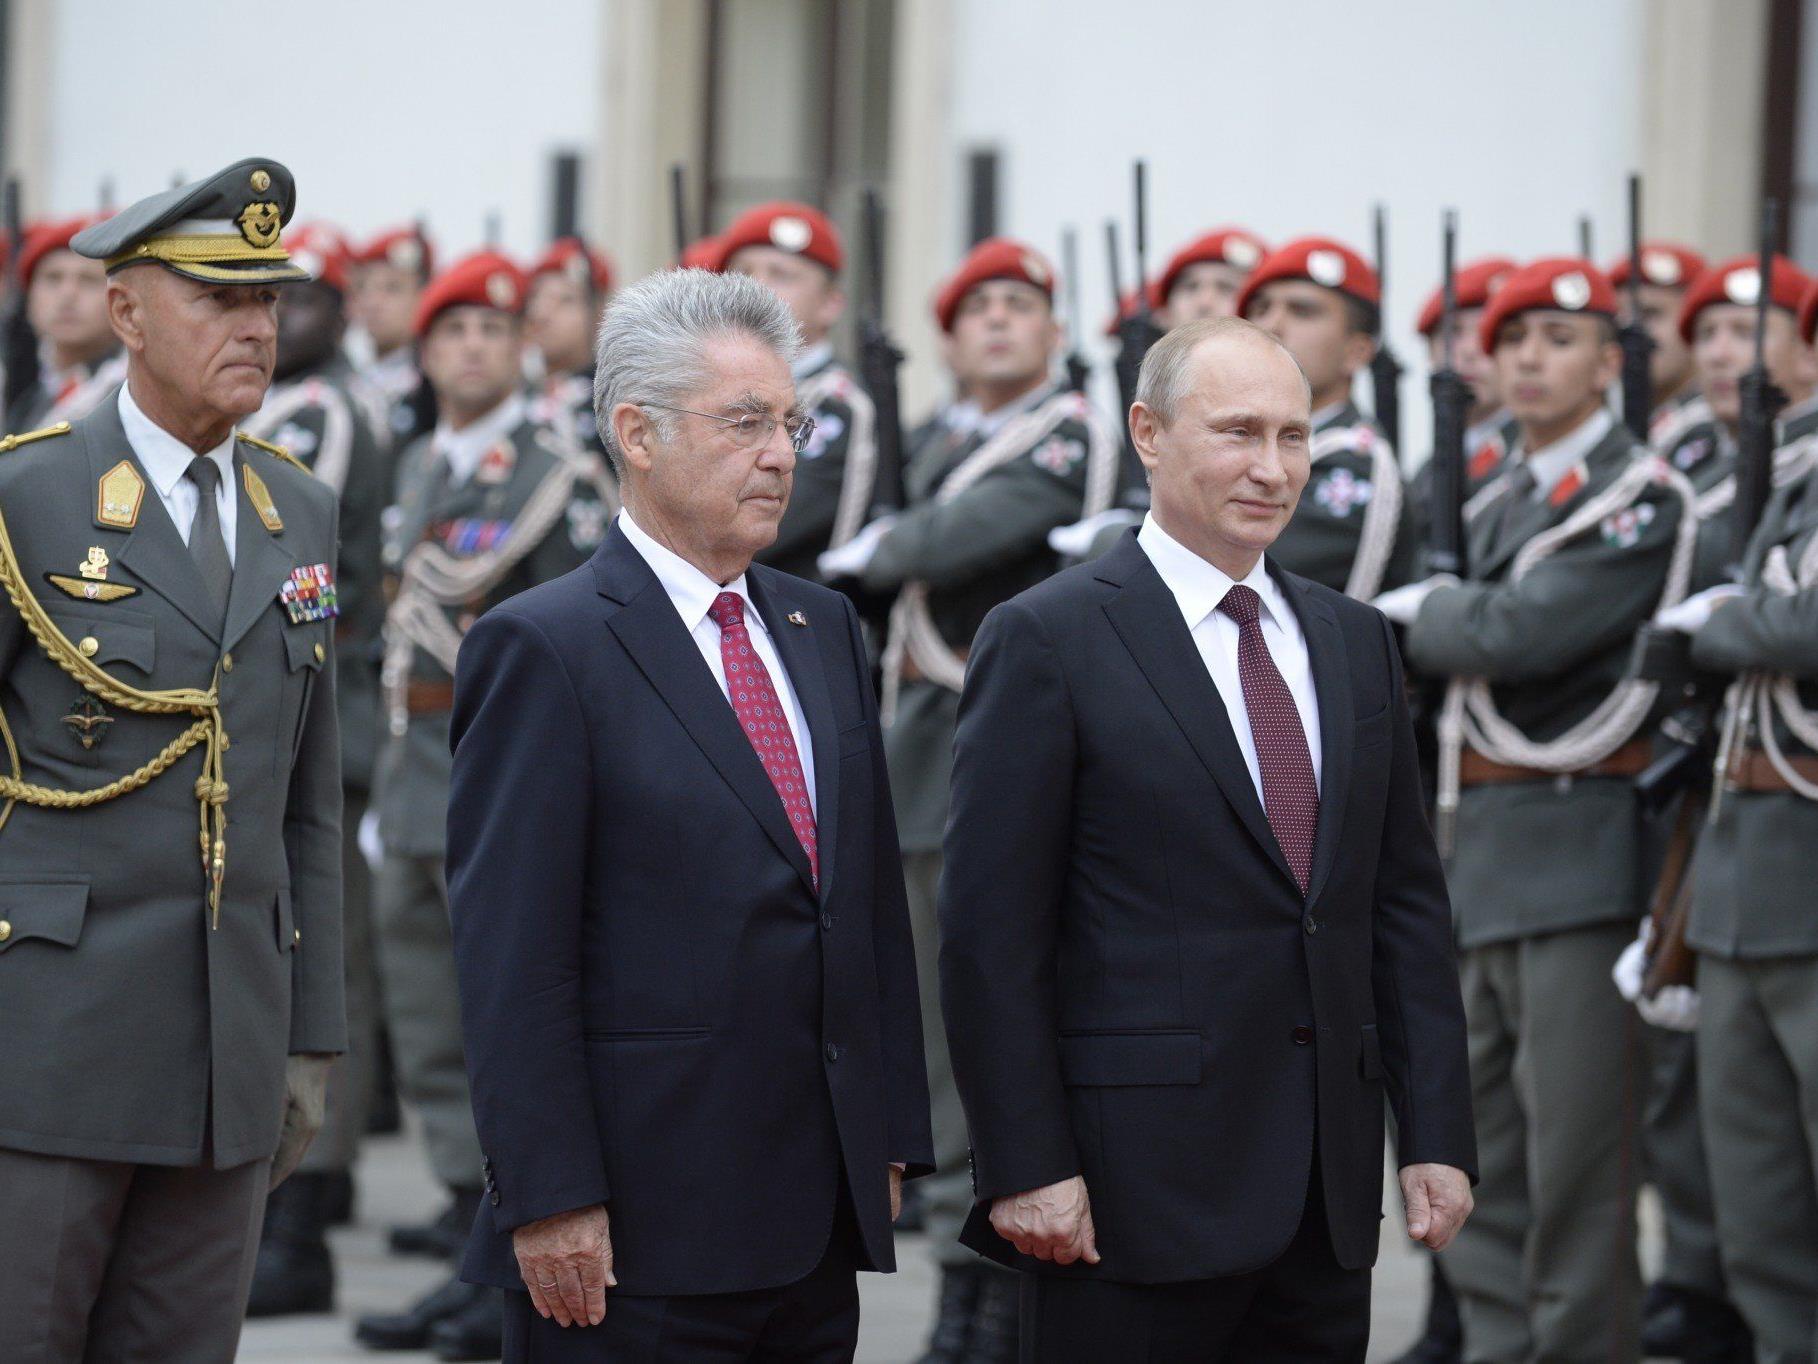 Putin in Wien: Erste Reaktion zu Militäreinsatz - Stopp